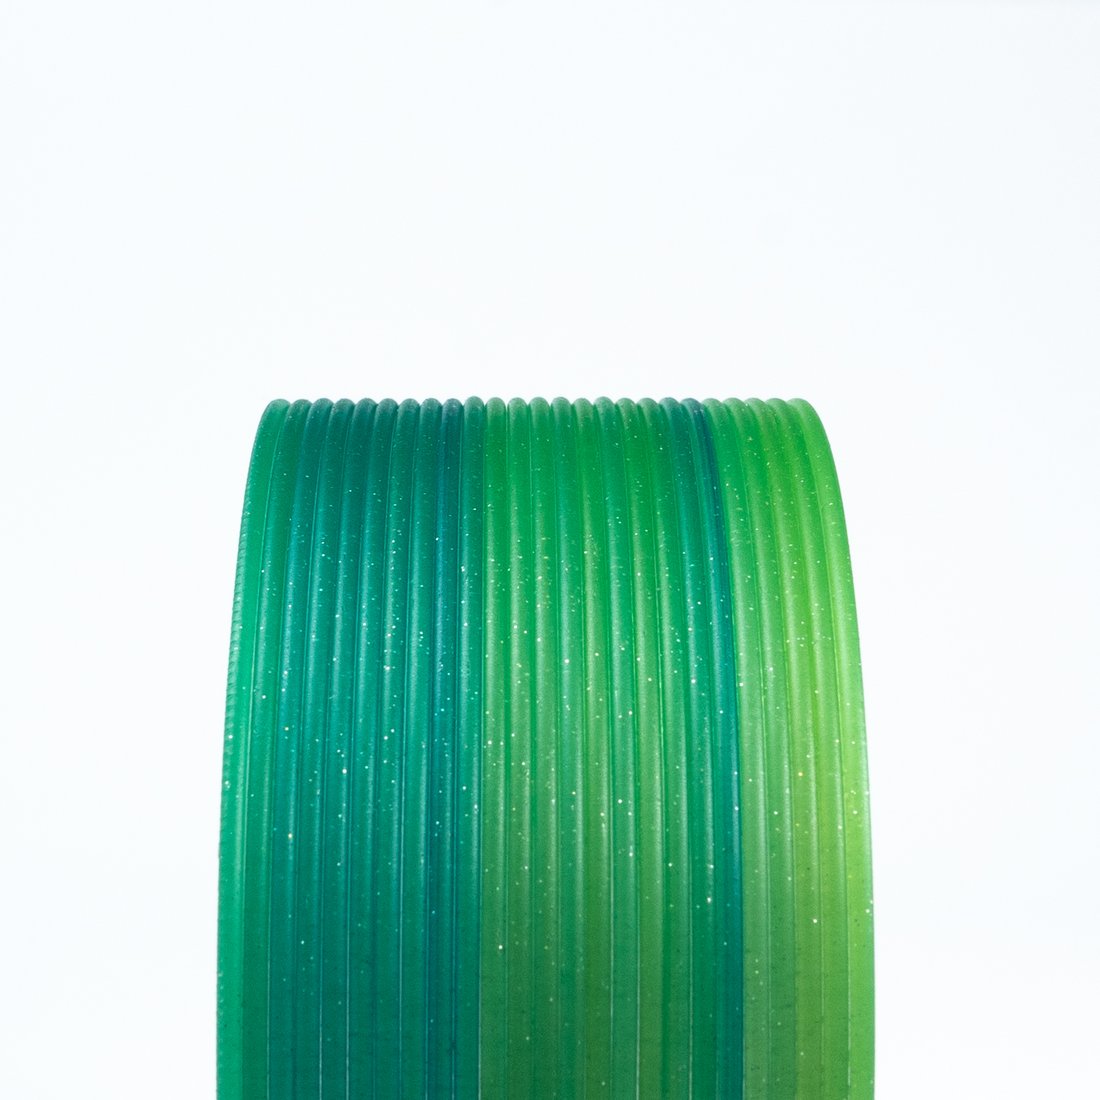 Proto Pasta Forest Fantasy Green Multicolor HTPLA - 1.75mm .5KG